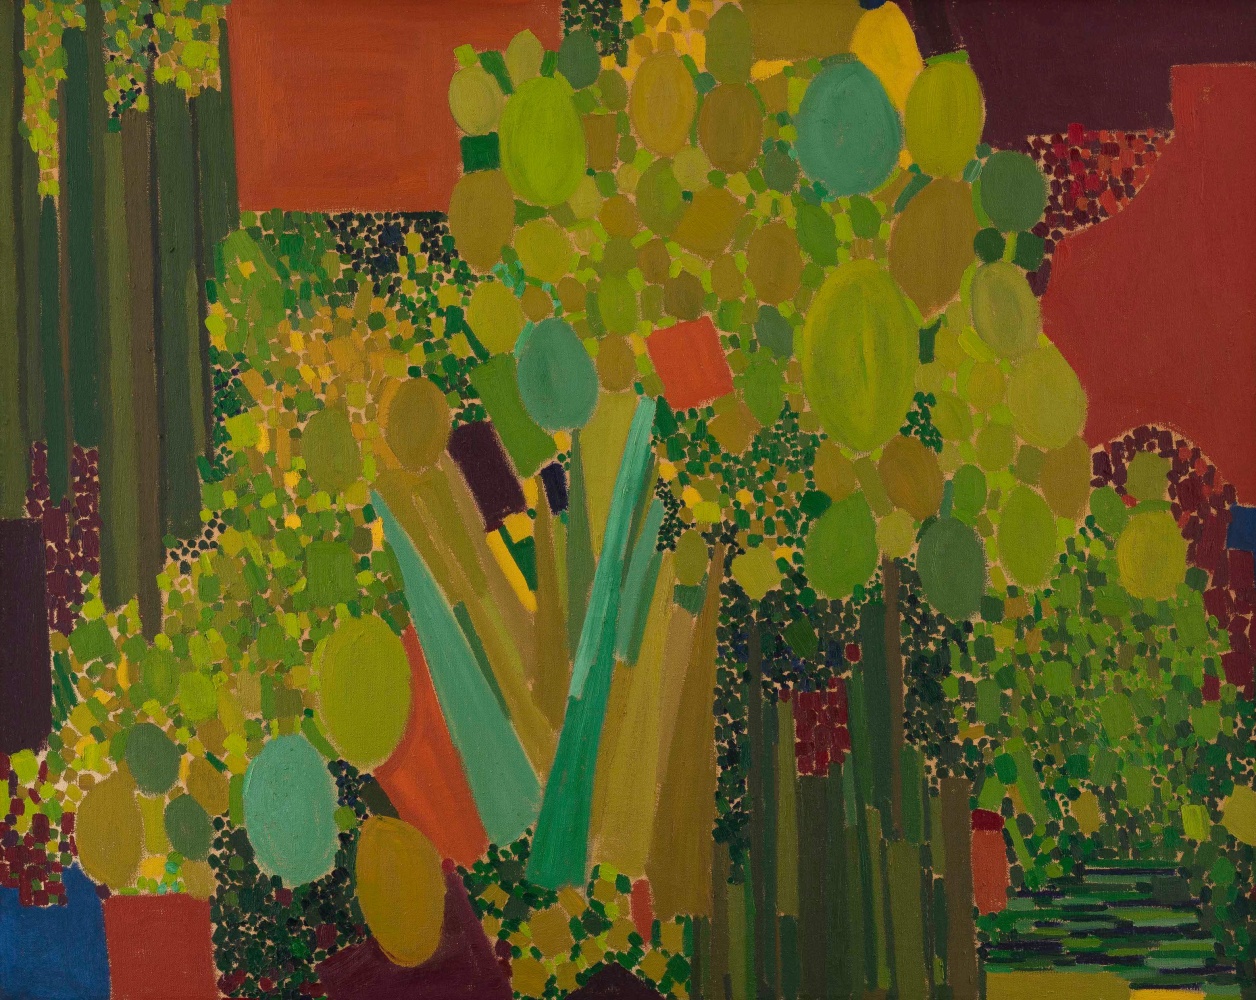 Lynne Drexler

Sparked Green

1963

oil on canvas

31&amp;nbsp;&amp;frac12; x 39&amp;nbsp;&amp;frac34; inches (80 x 101 cm)

&amp;copy; The Estate of Lynne Drexler